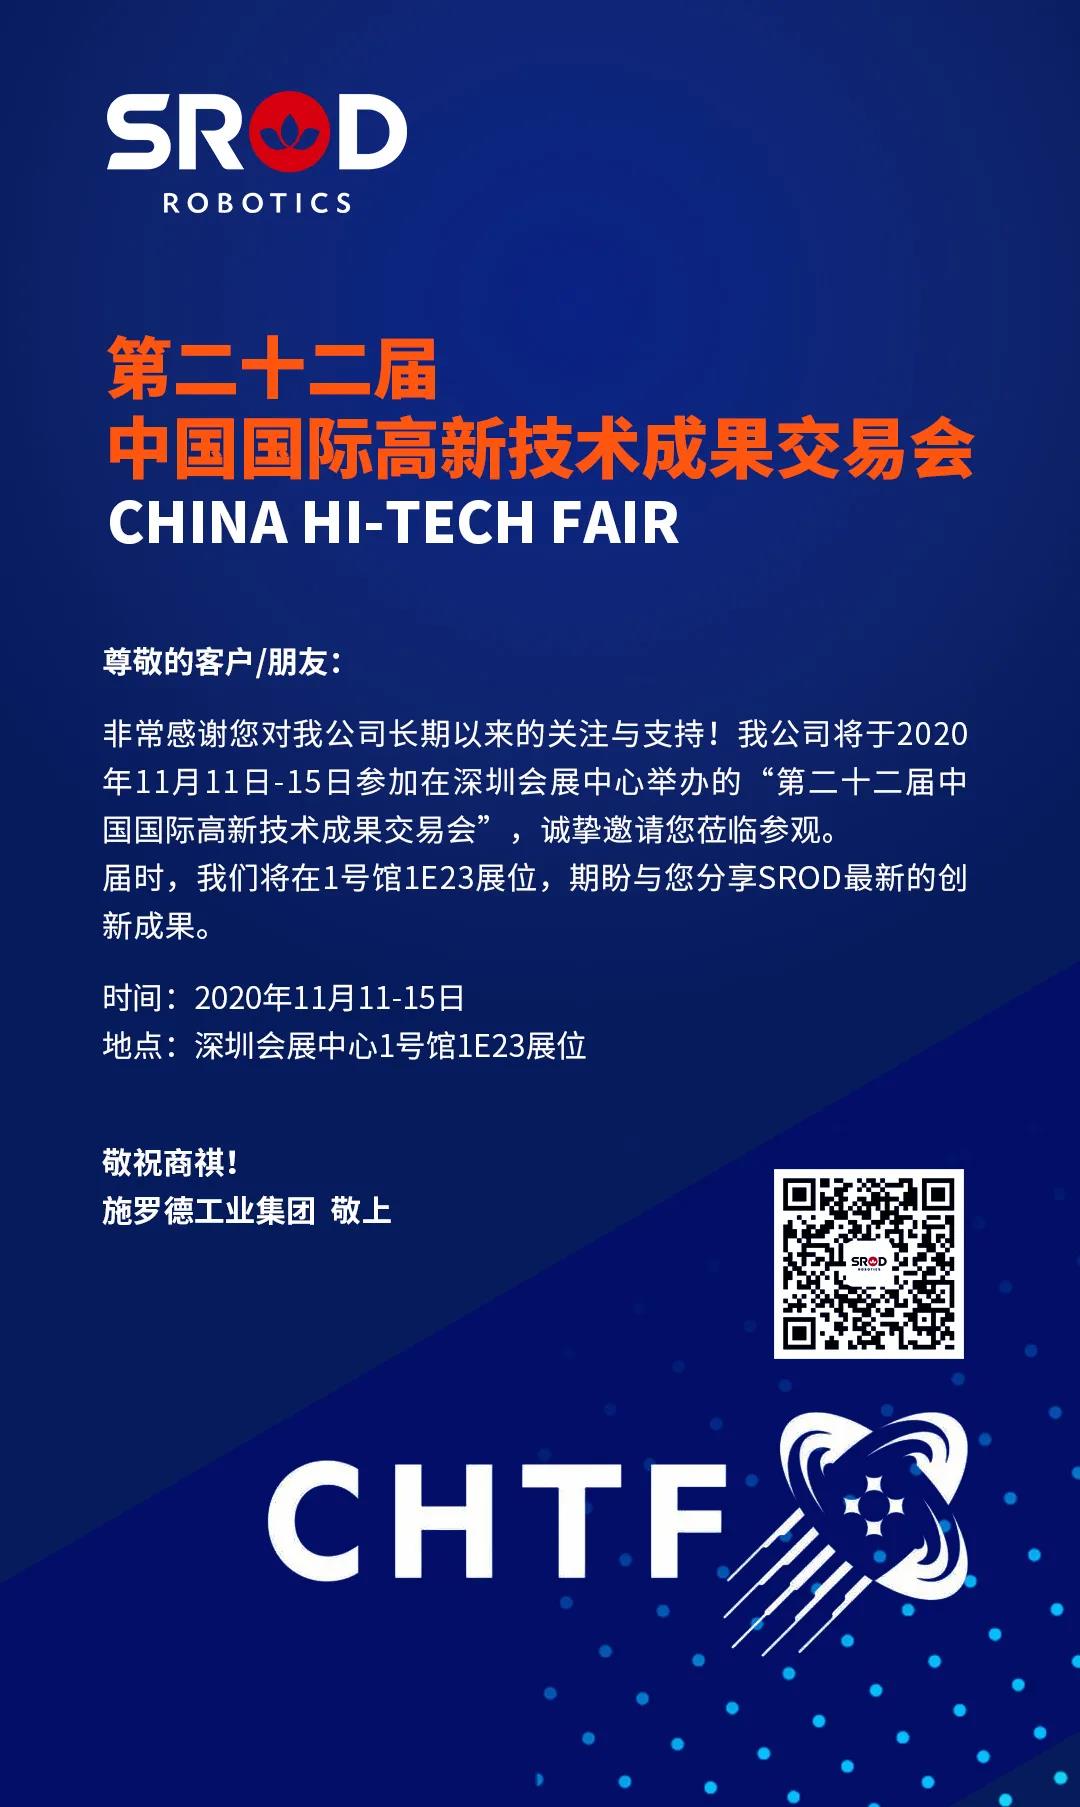 展会预告 | 第二十二届中国国际高新技术成果交易会